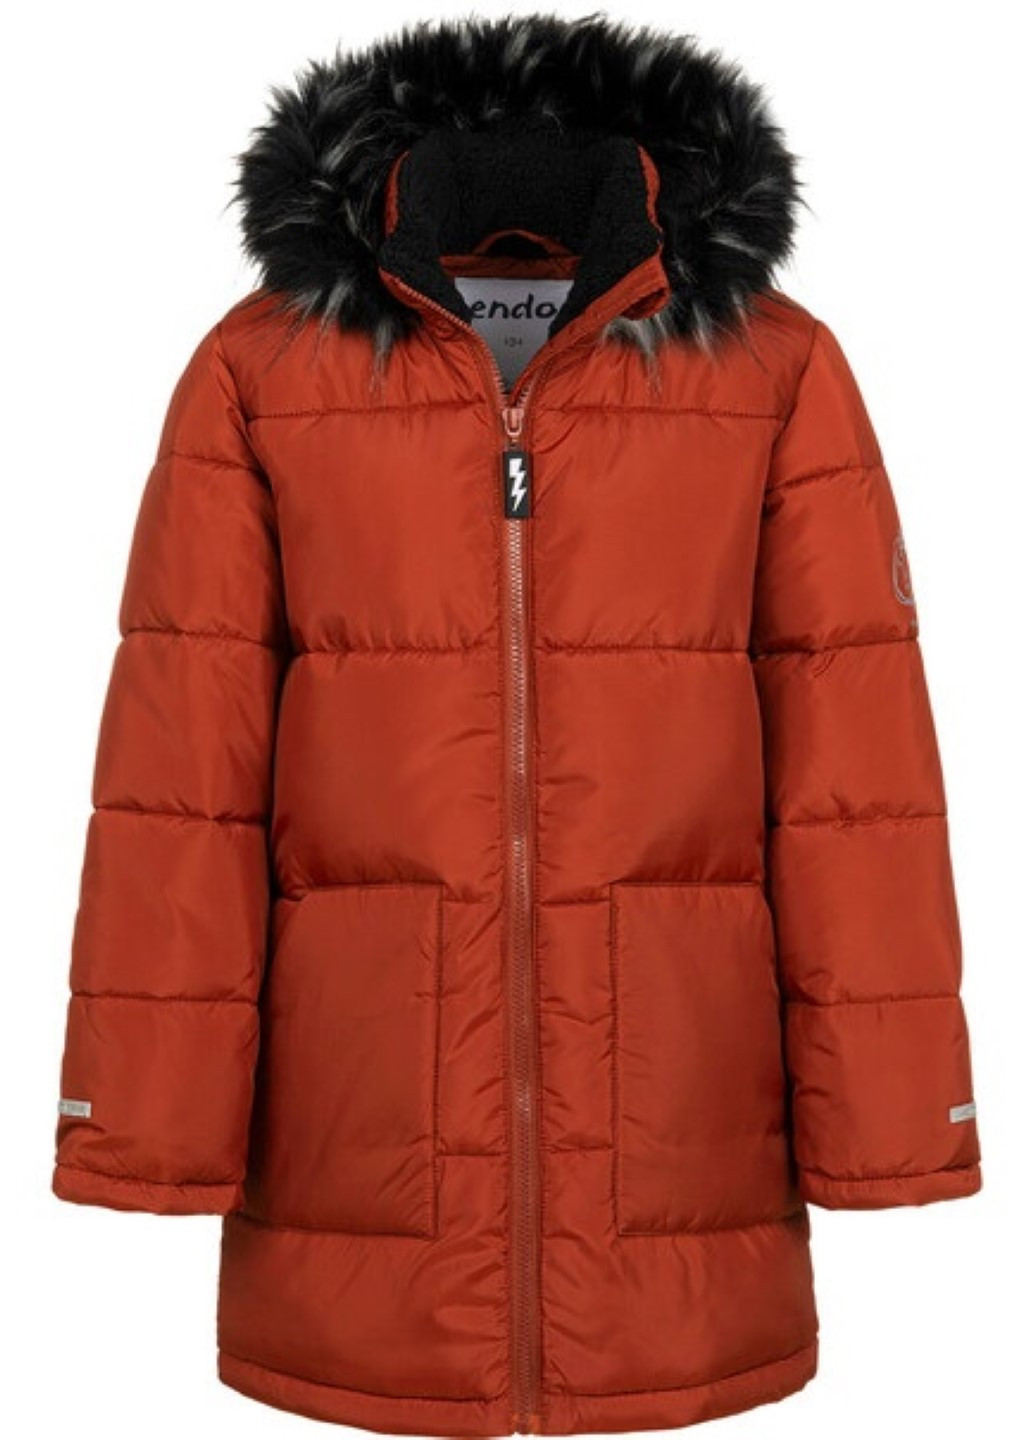 Терракотовая зимняя куртка удлиненная на мальчика демисезонная Endo C04A014_2